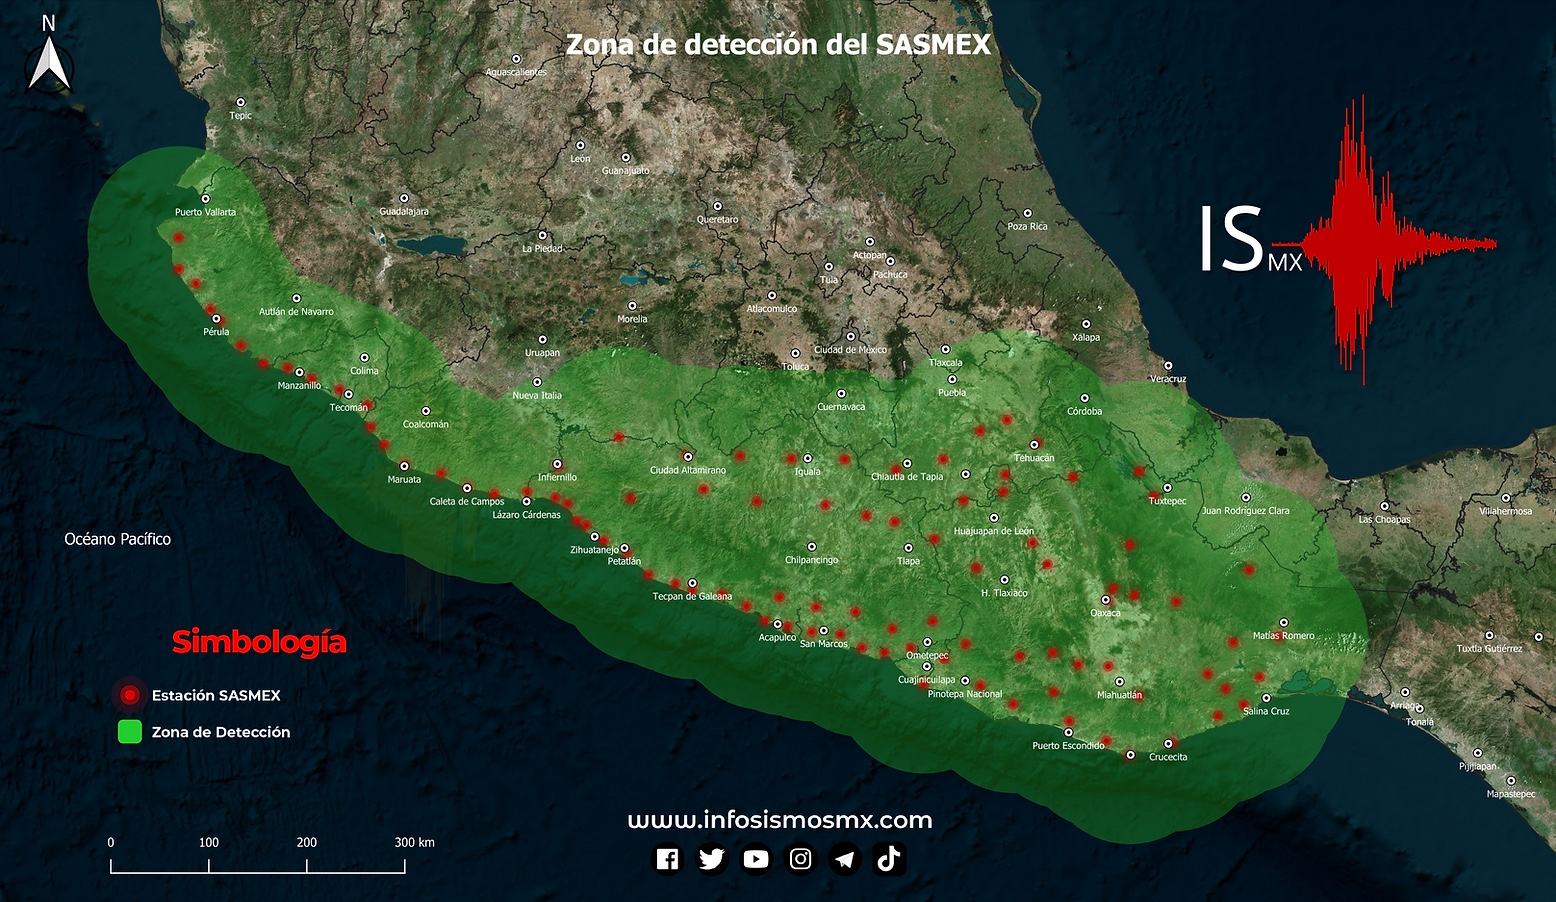 Las 96 estaciones sismo sensoras del Sistema de Alerta Sísmica Mexicano (SASMEX) en el sur de México (Foto: InfoSismosMX)